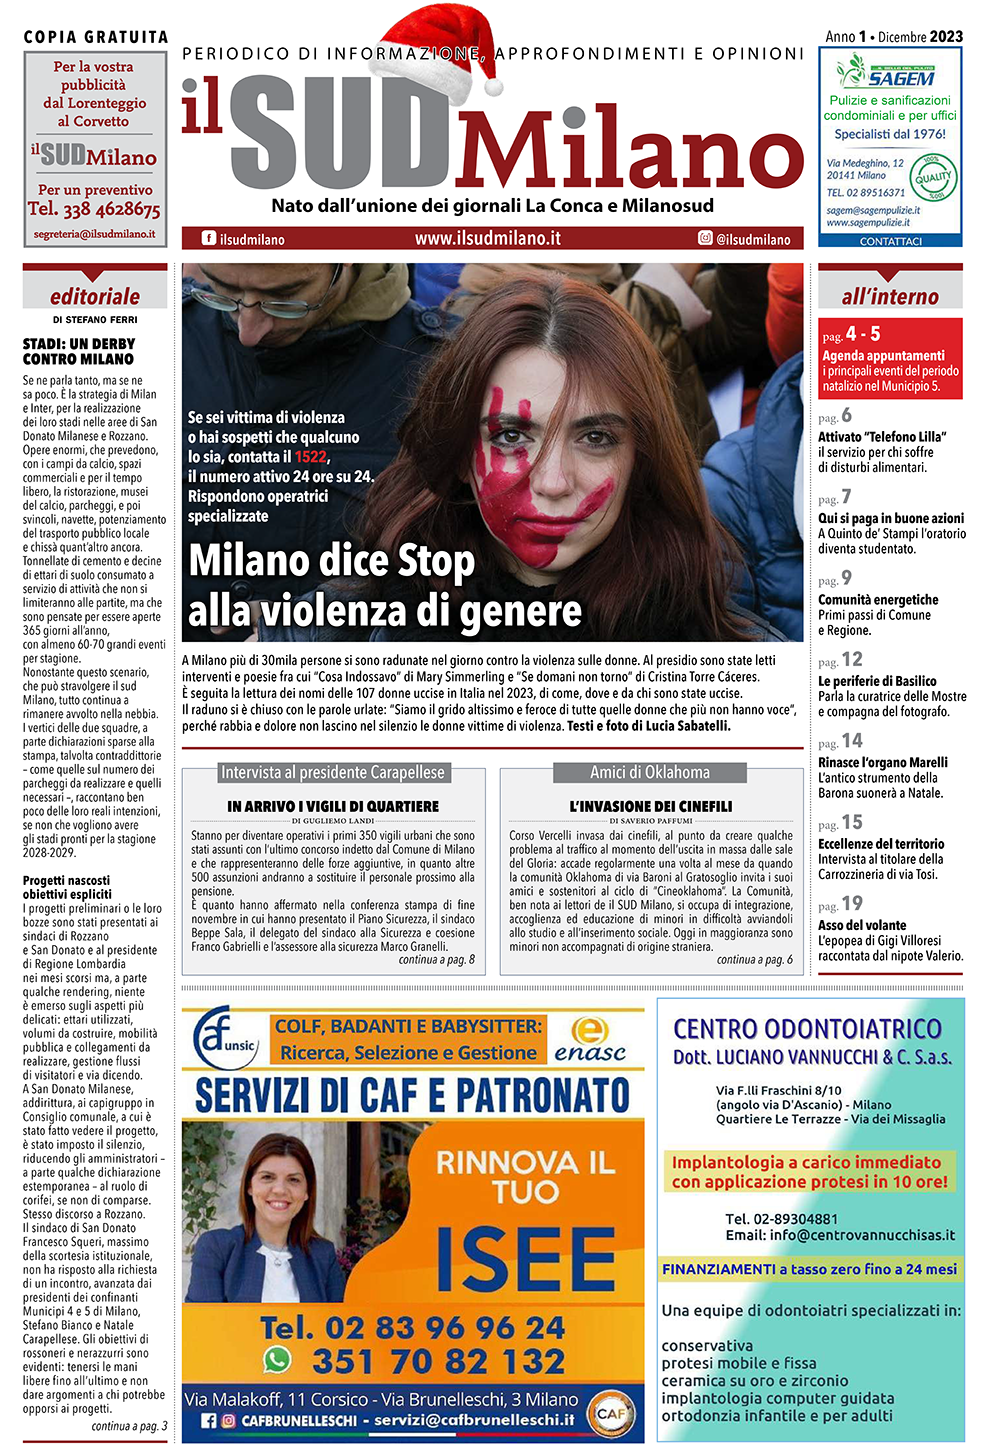 Prima pagina del giornale il SUD Milano di dicembre 2023